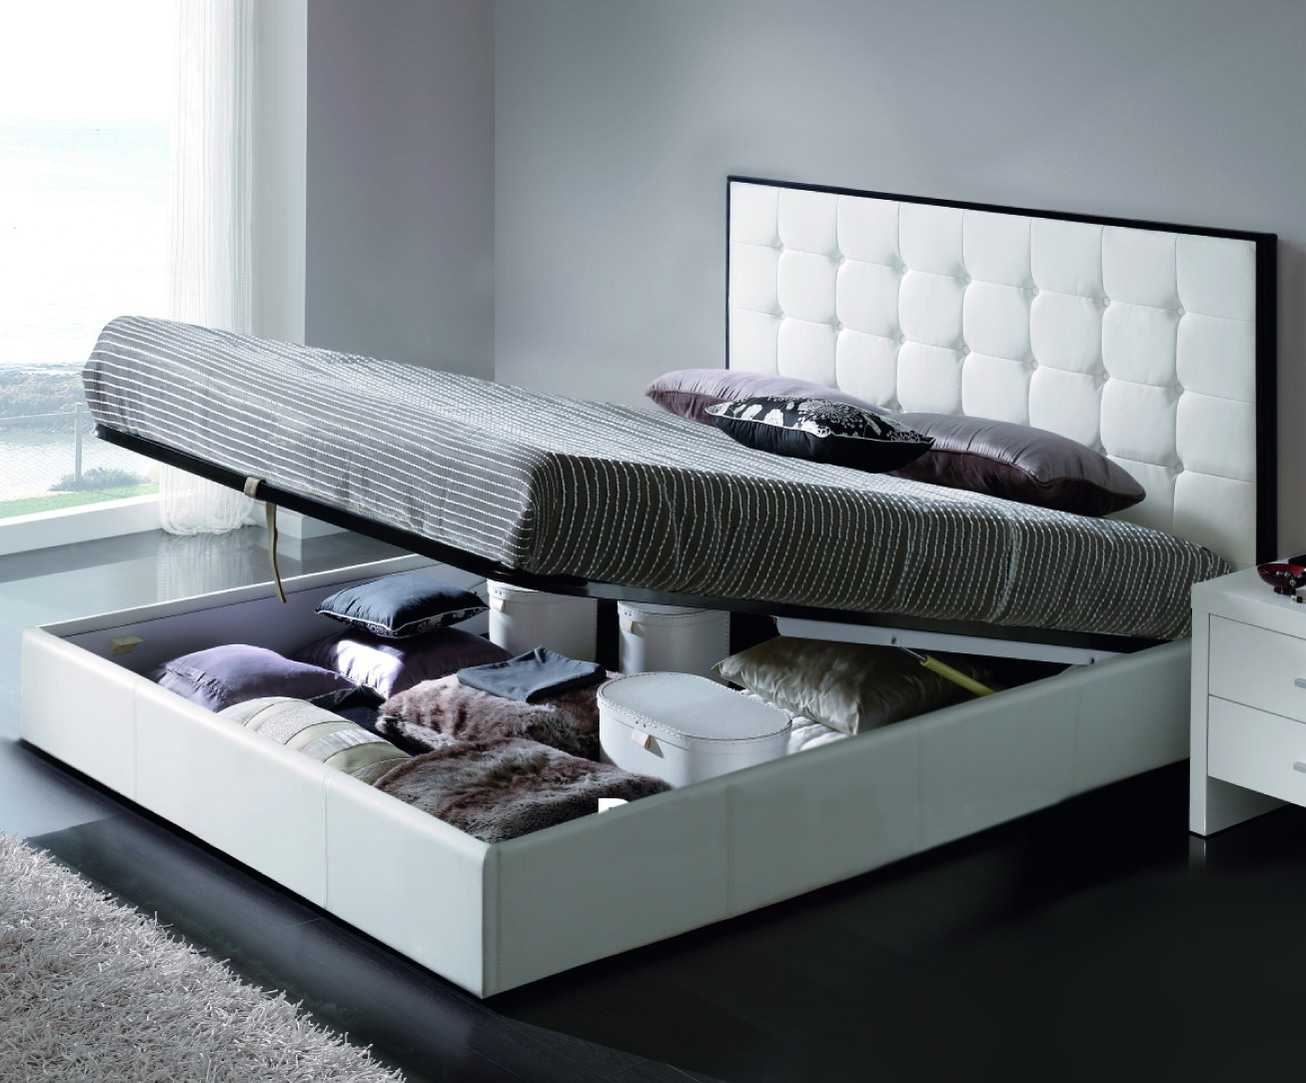 Функциональная кровать для спальни